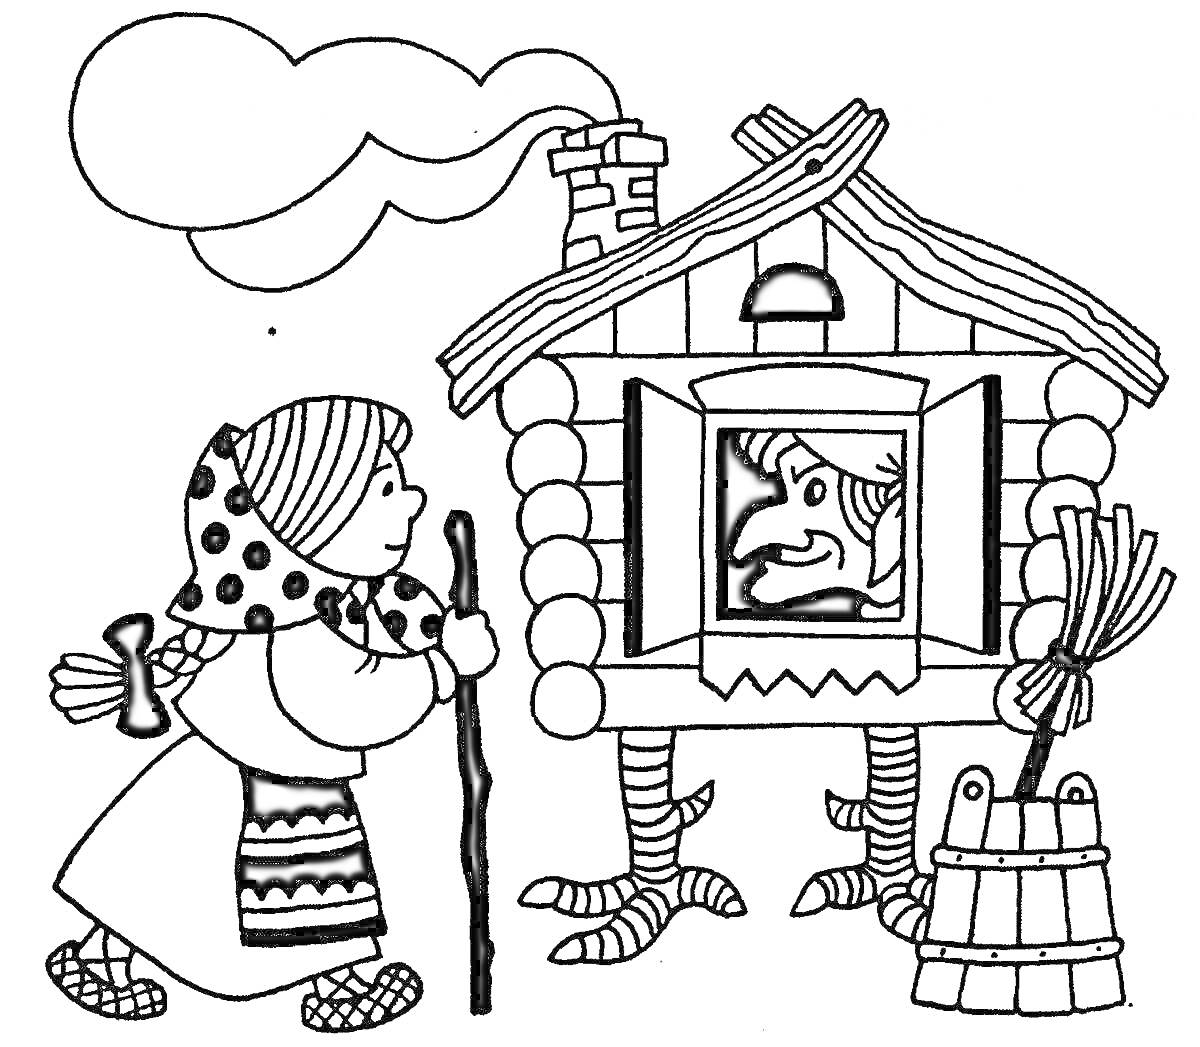 Раскраска Избушка на курьих ножках с Бабой-ягой, девочка с посохом, ведро и метла.